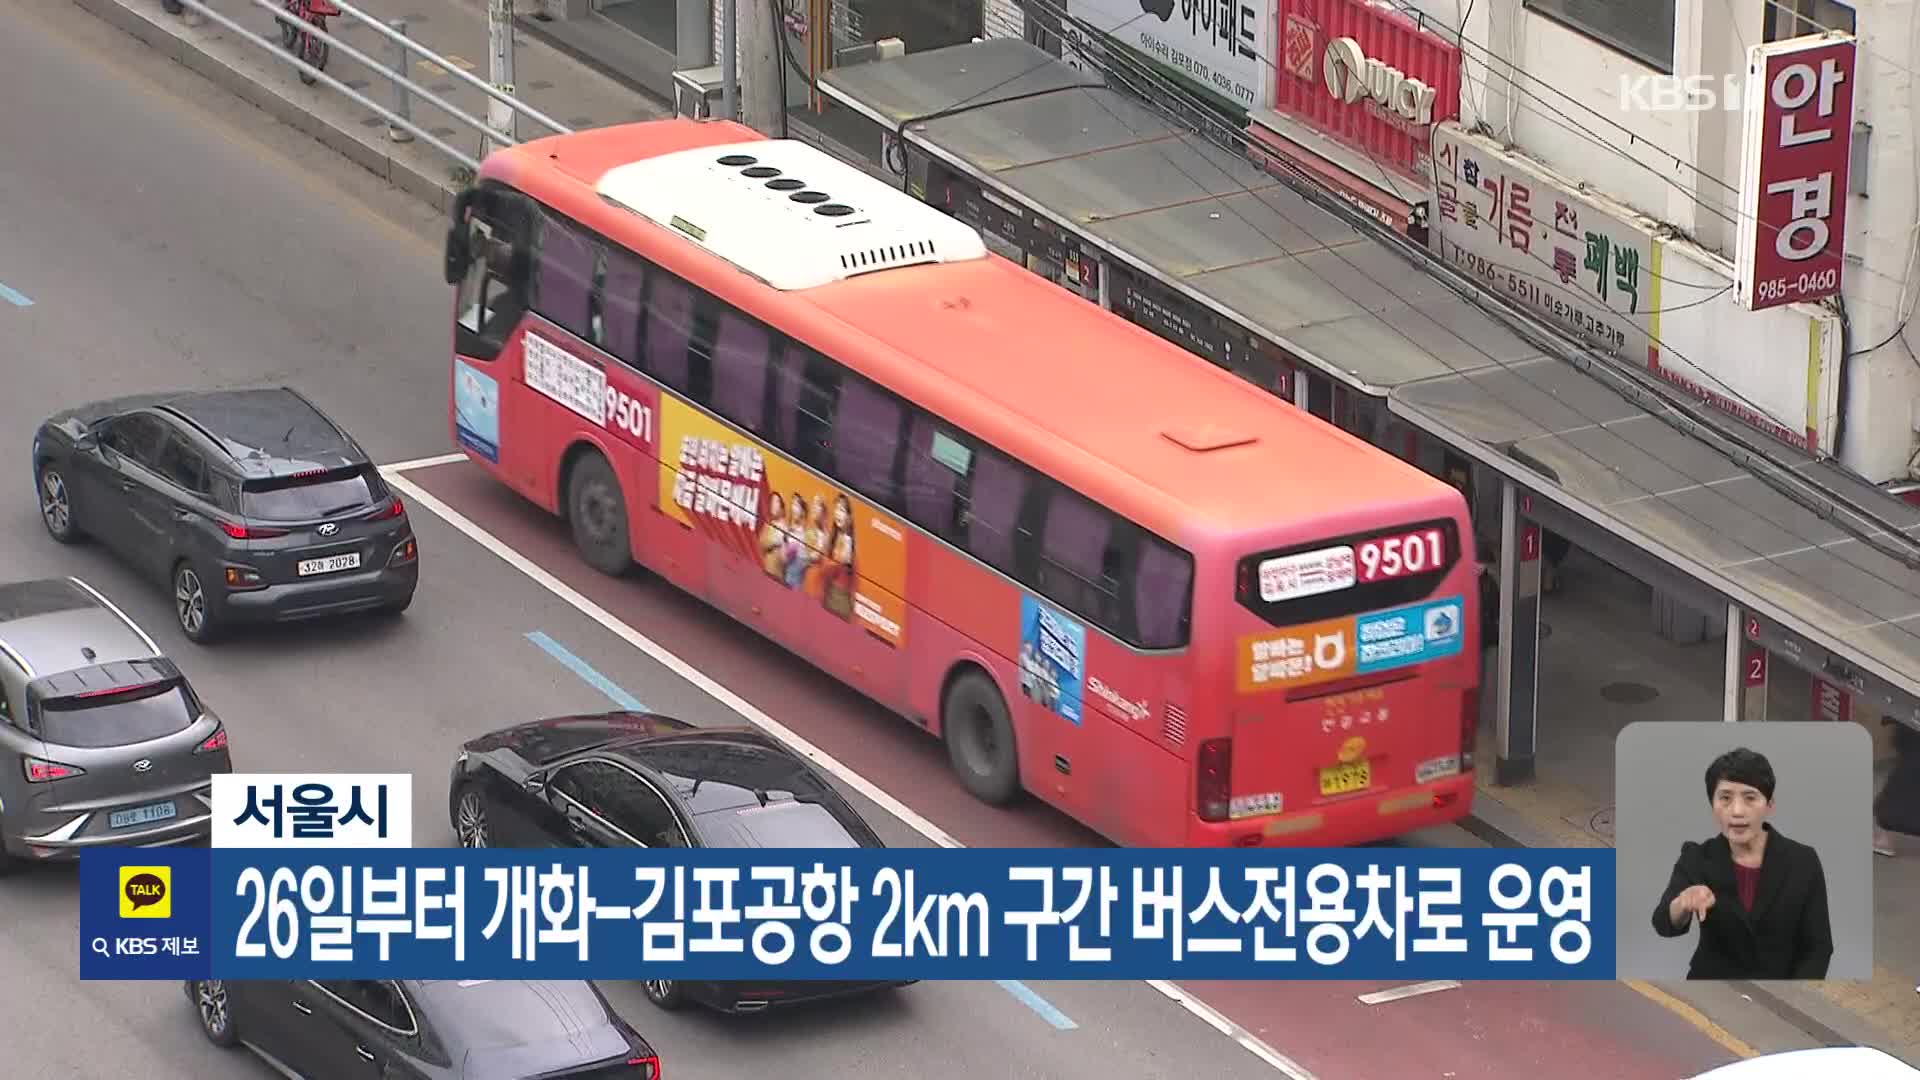 서울시, 26일부터 개화-김포공항 2km구간 버스전용차로 운영